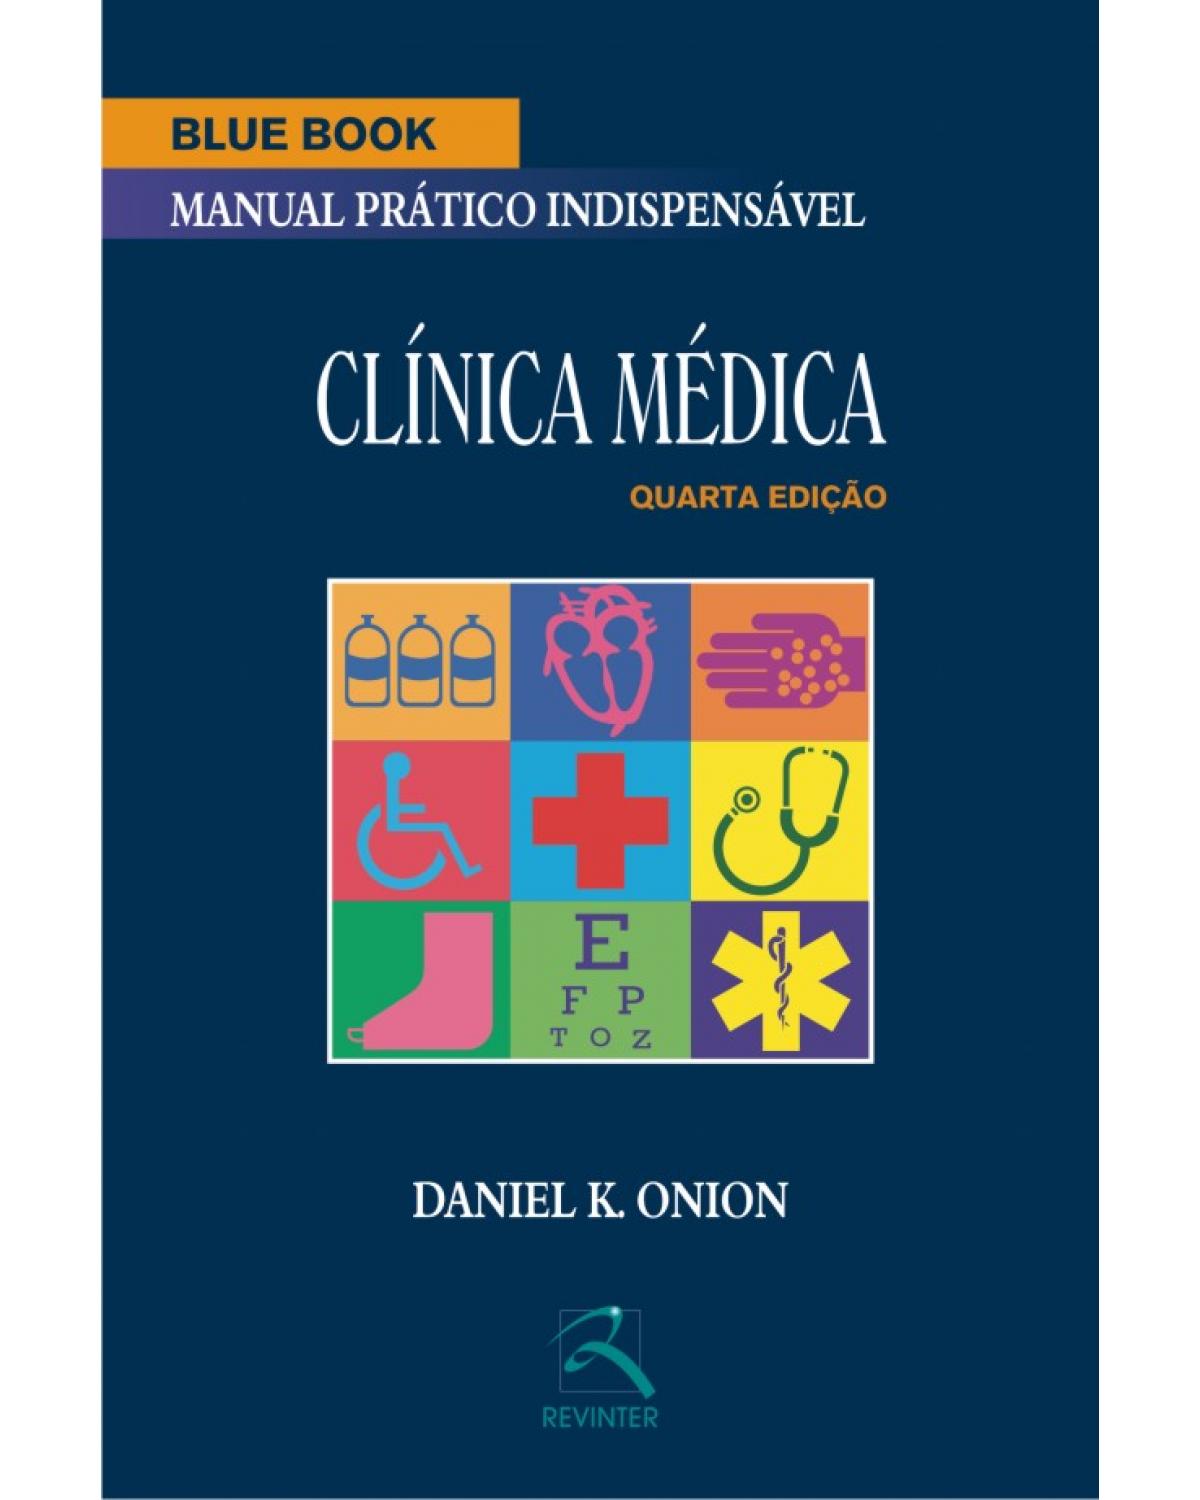 Blue book - Clínica médica - manual prático indispensável - 4ª Edição | 2010